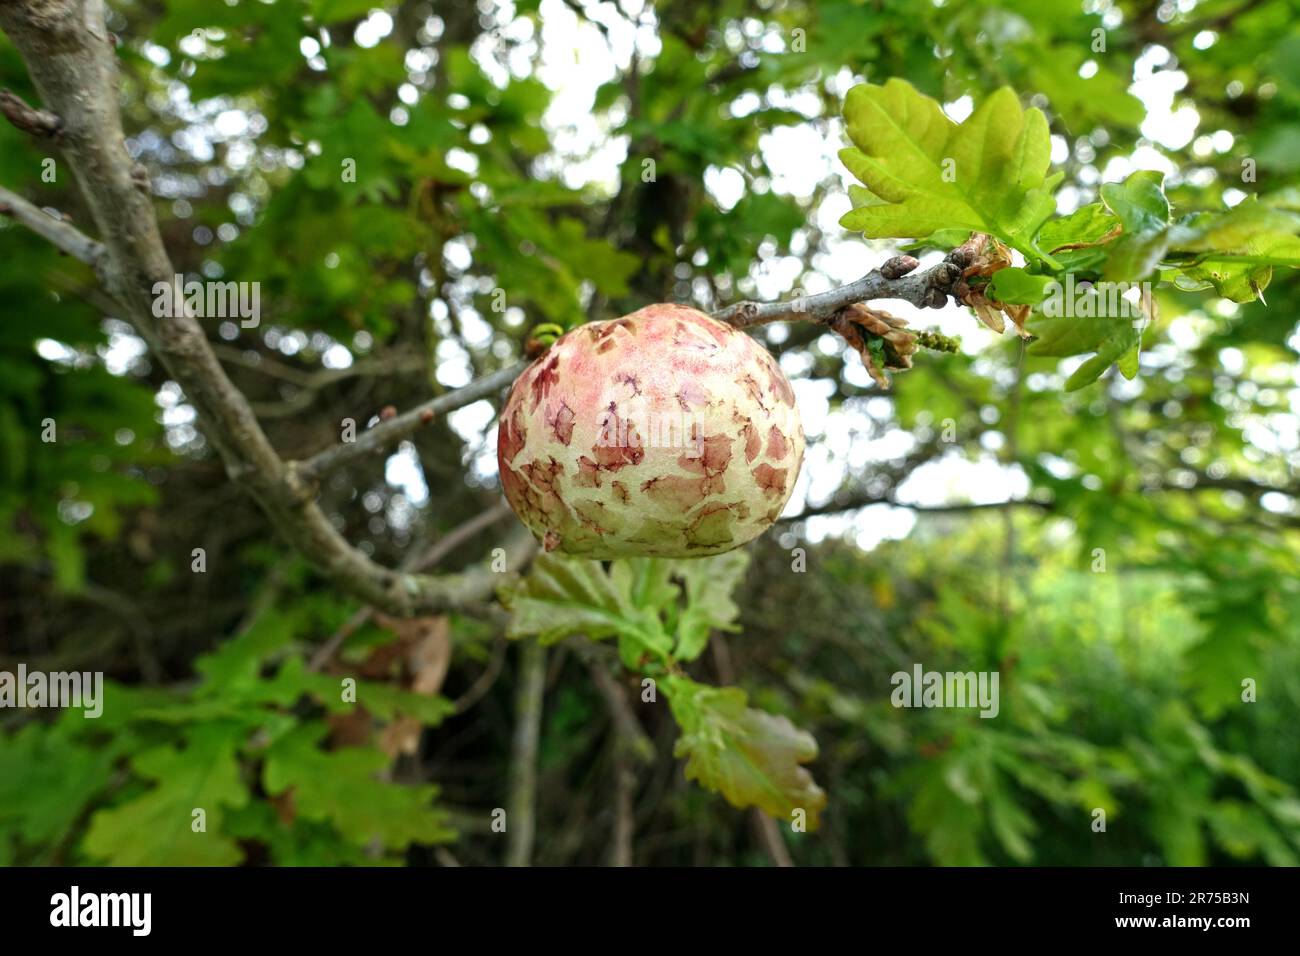 Galette de chêne, cynipide de cerisier-Galle de feuilles de chêne, Galle de cerisier (Cynips quercusfolii), pomme de chêne sur quercus robur, France, Bretagne Banque D'Images